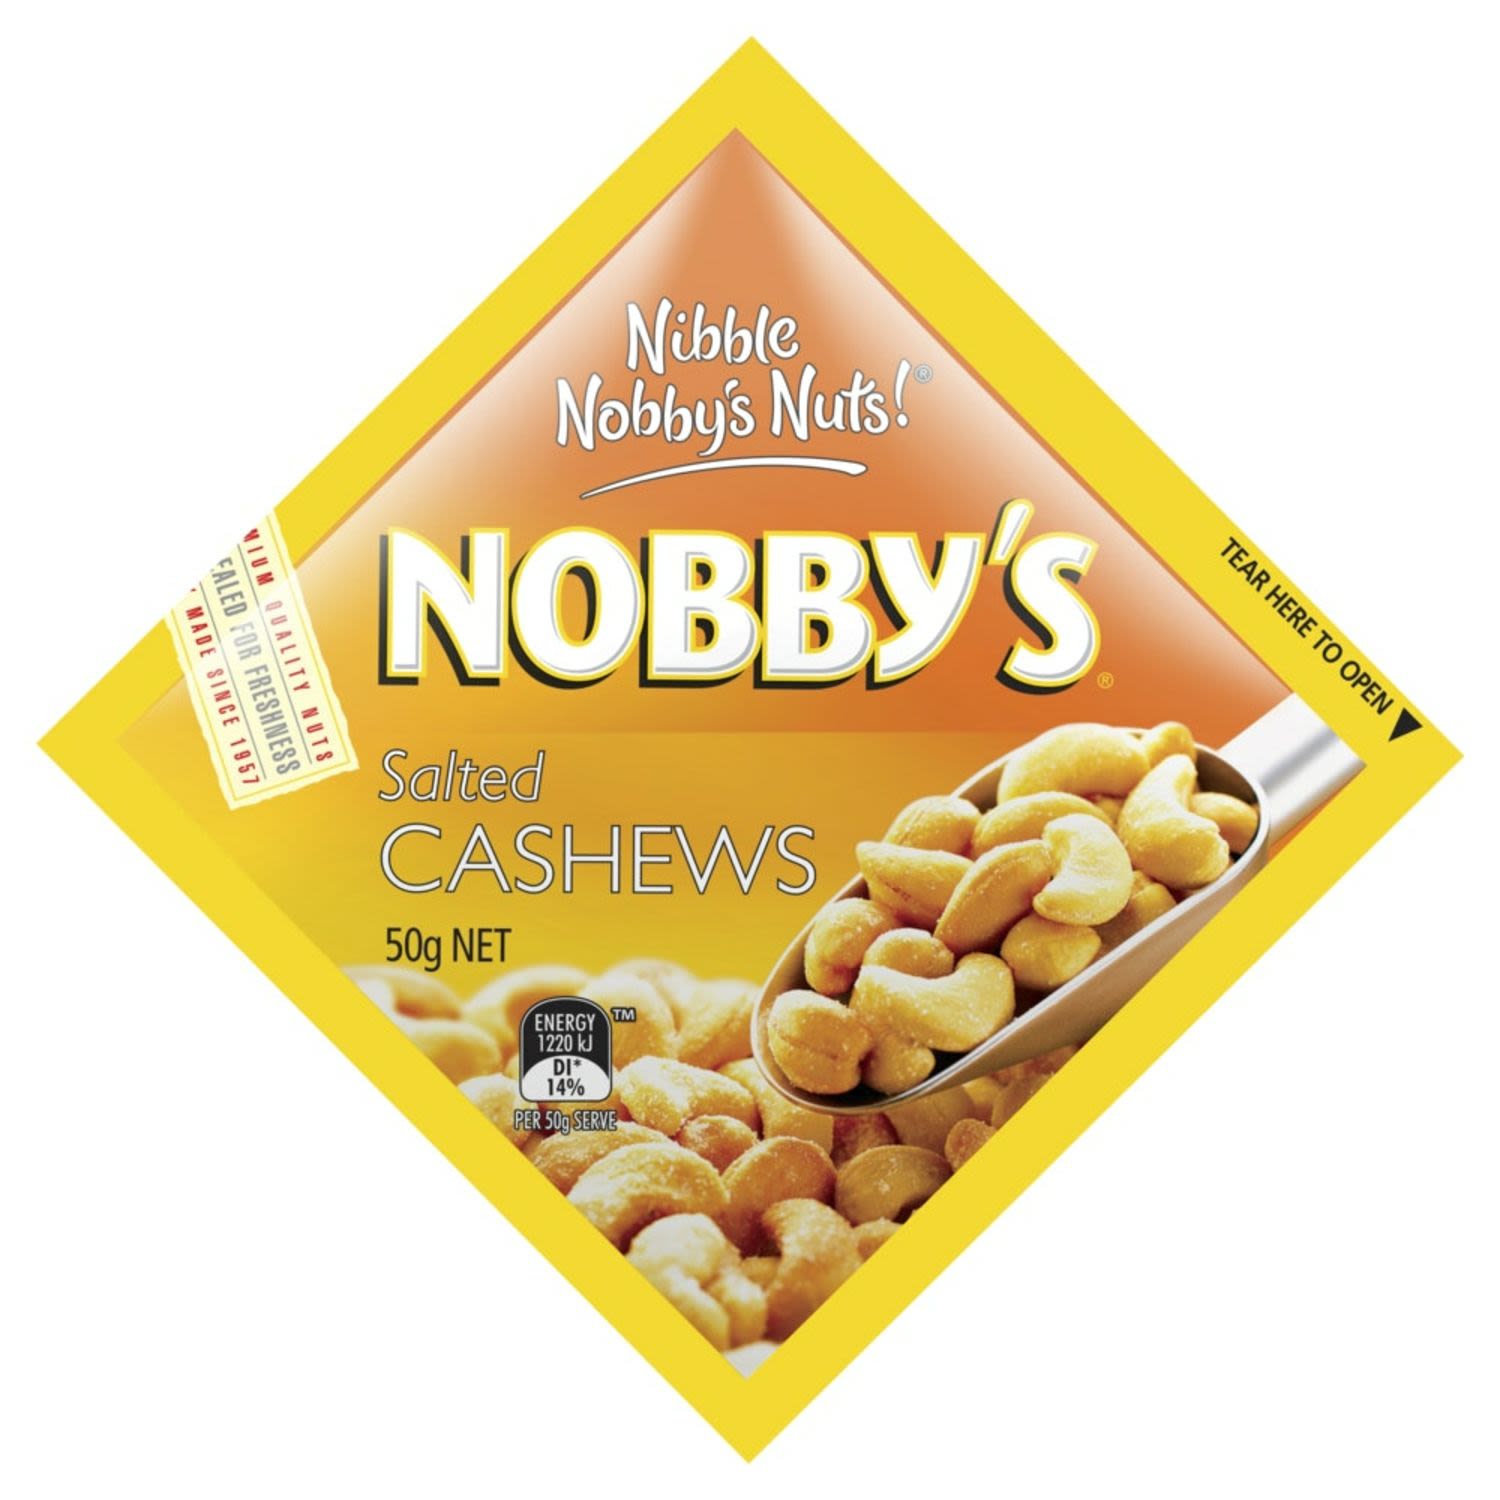 Nobby's Salted cashews 50g<br /> <br />Alcohol Volume: 0.0%<br /><br />Pack Format: Packet<br /><br />Standard Drinks: 0.0<br /><br />Pack Type: Packet<br />